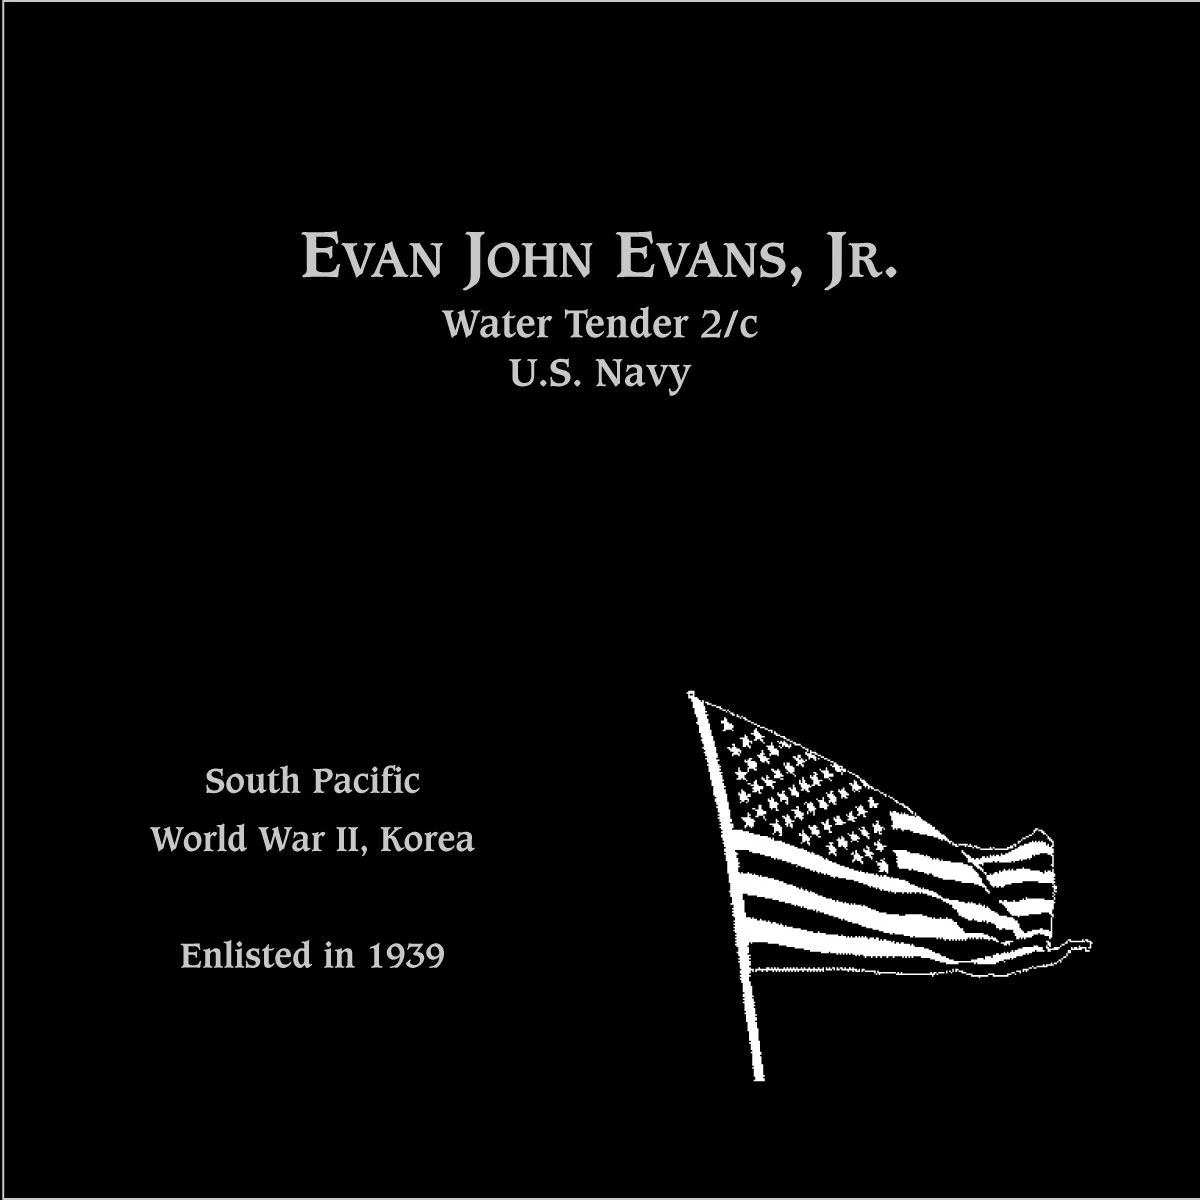 Evan John Evans, jr